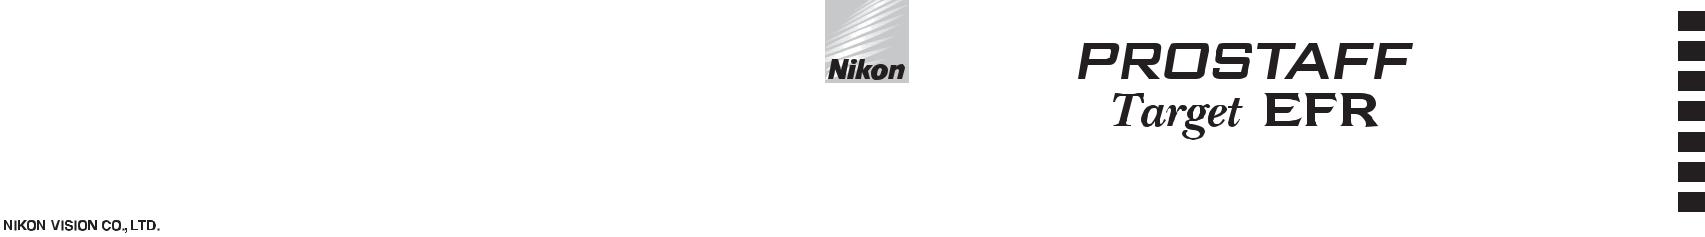 Nikon PROSTAFF Target EFR Instructions for use